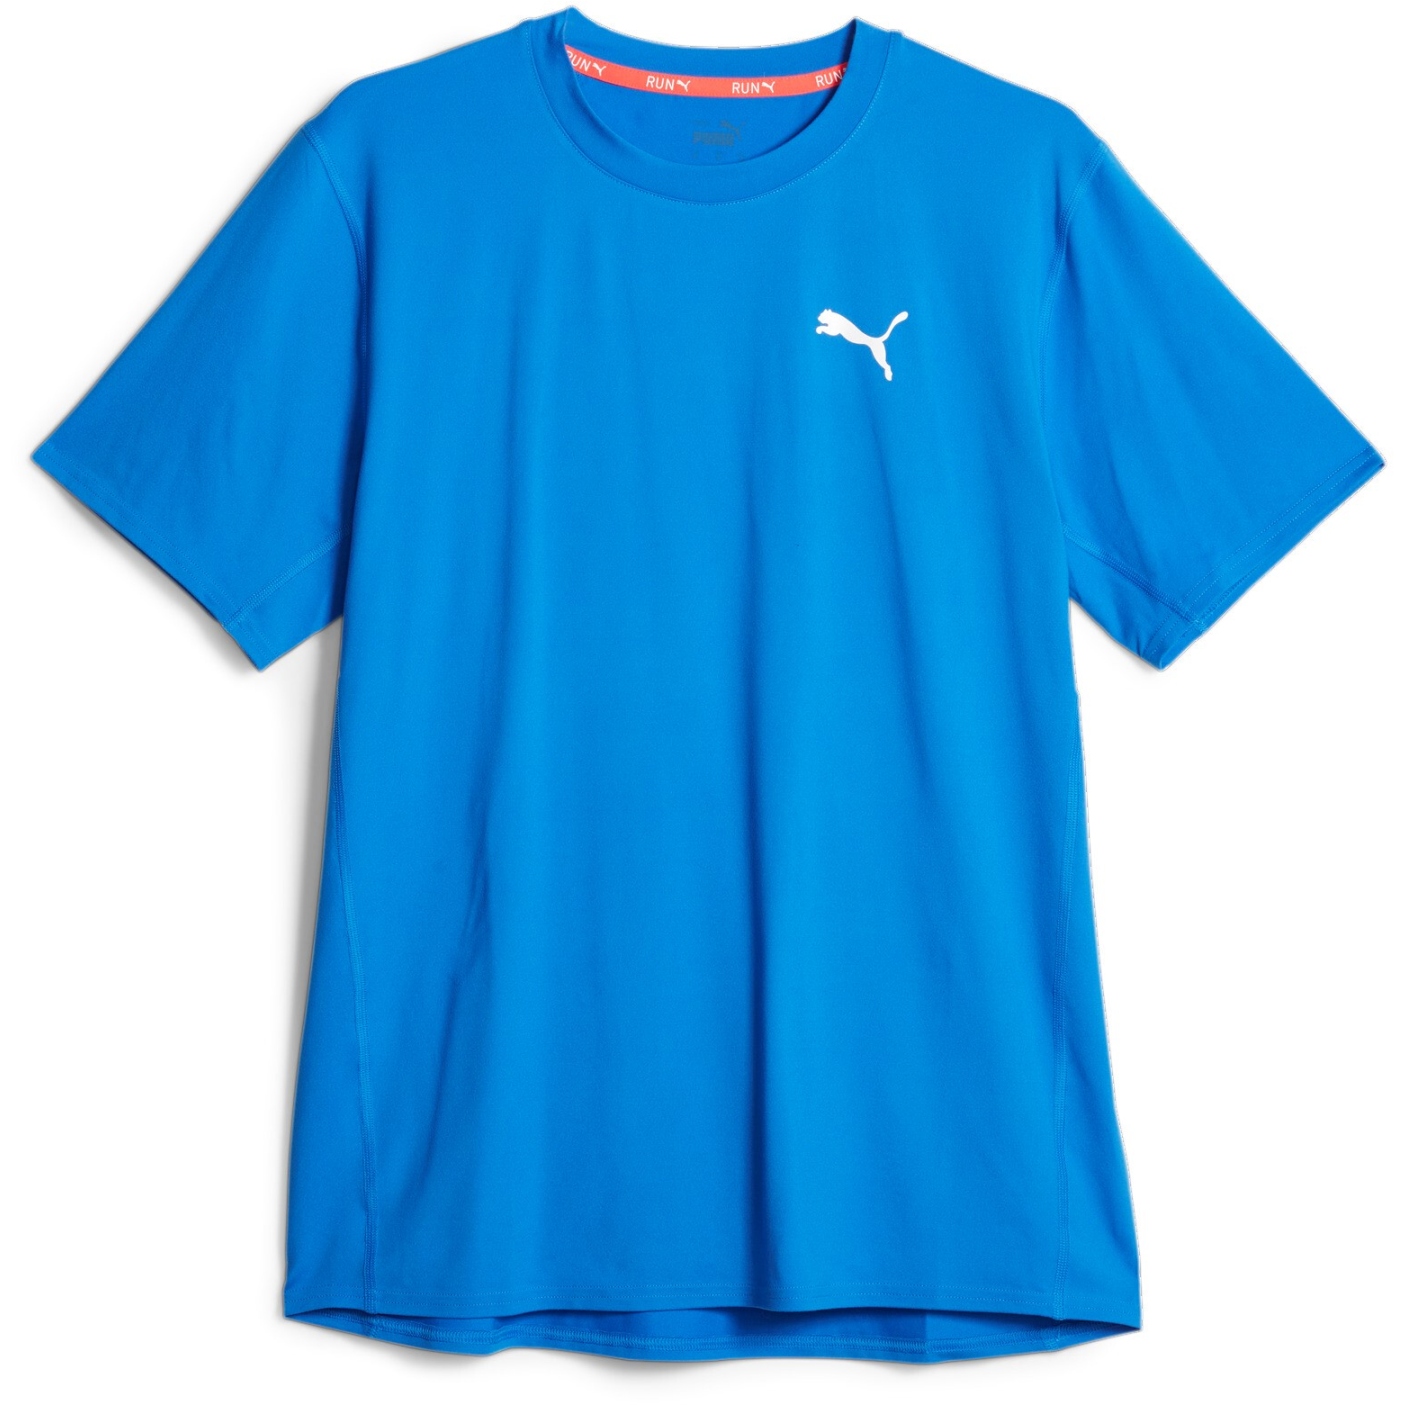 Bild von Puma Cloudspun Lauf-T-Shirt Herren - Ultra Blue